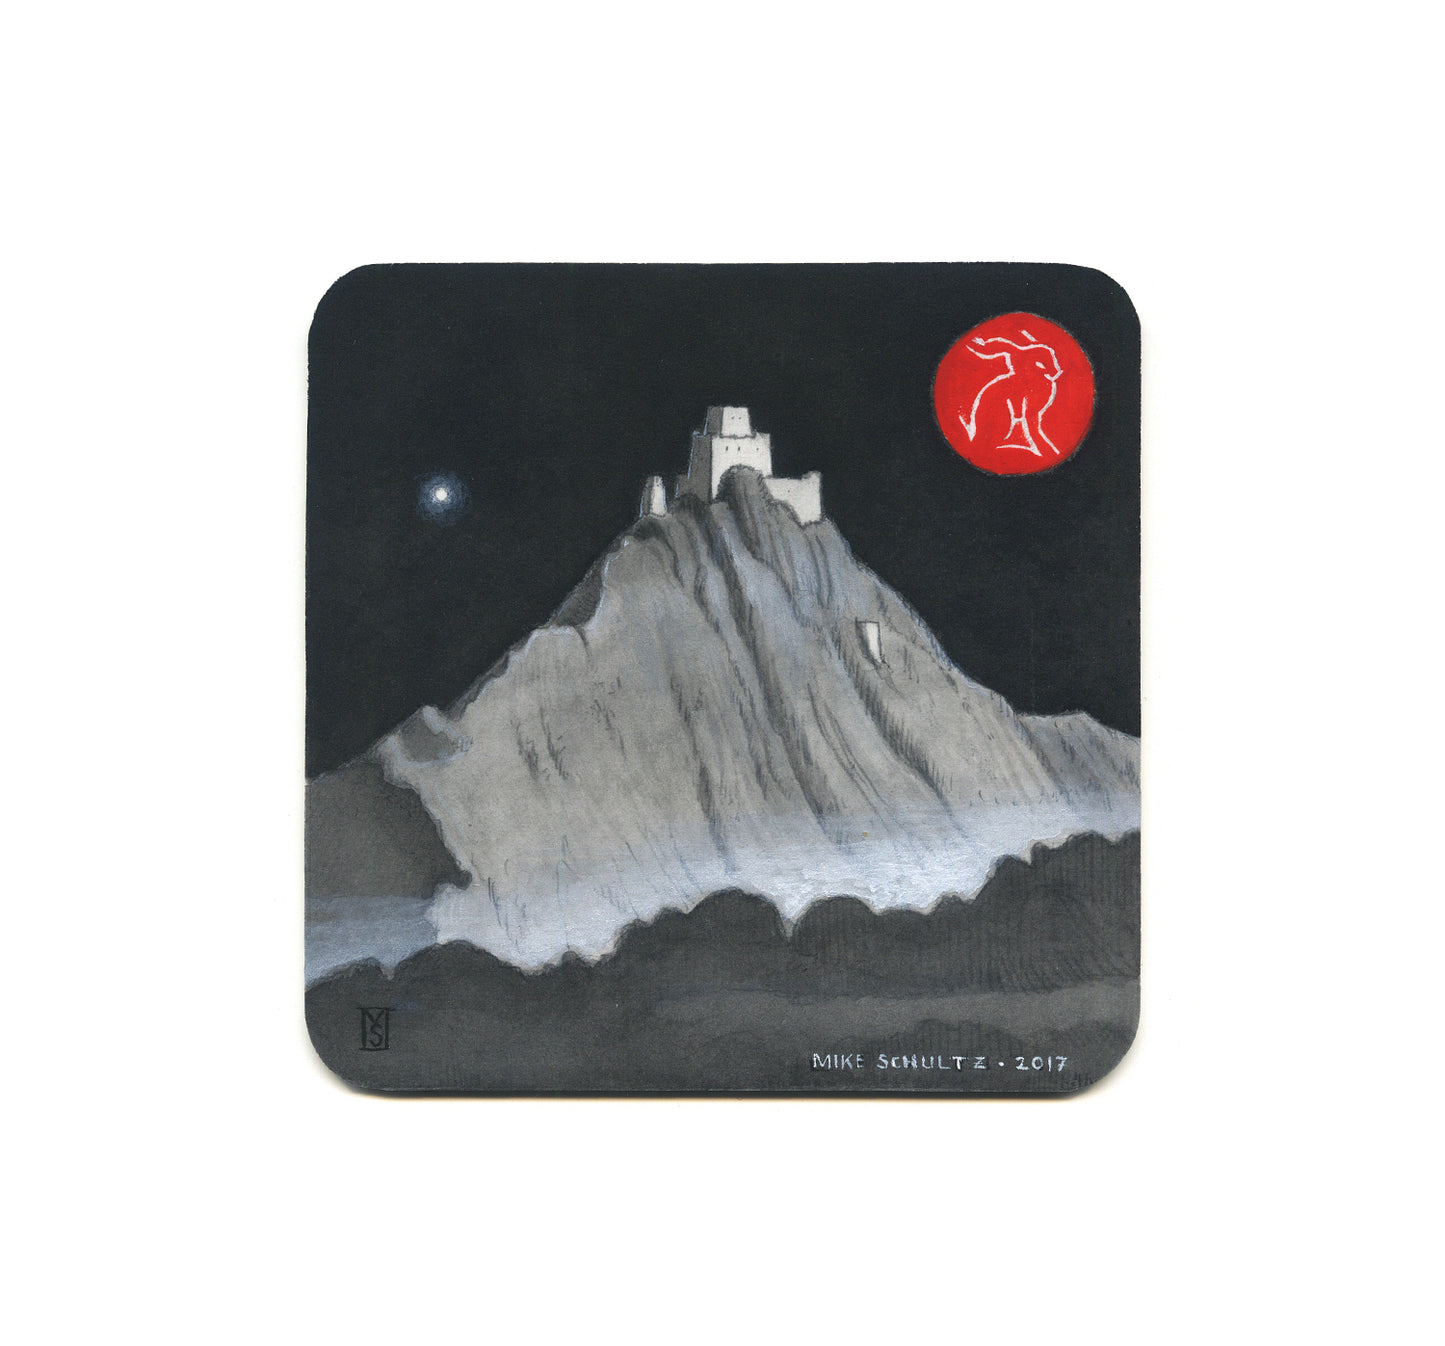 S2 Mike Schultz - Tibetan Monastery Coaster